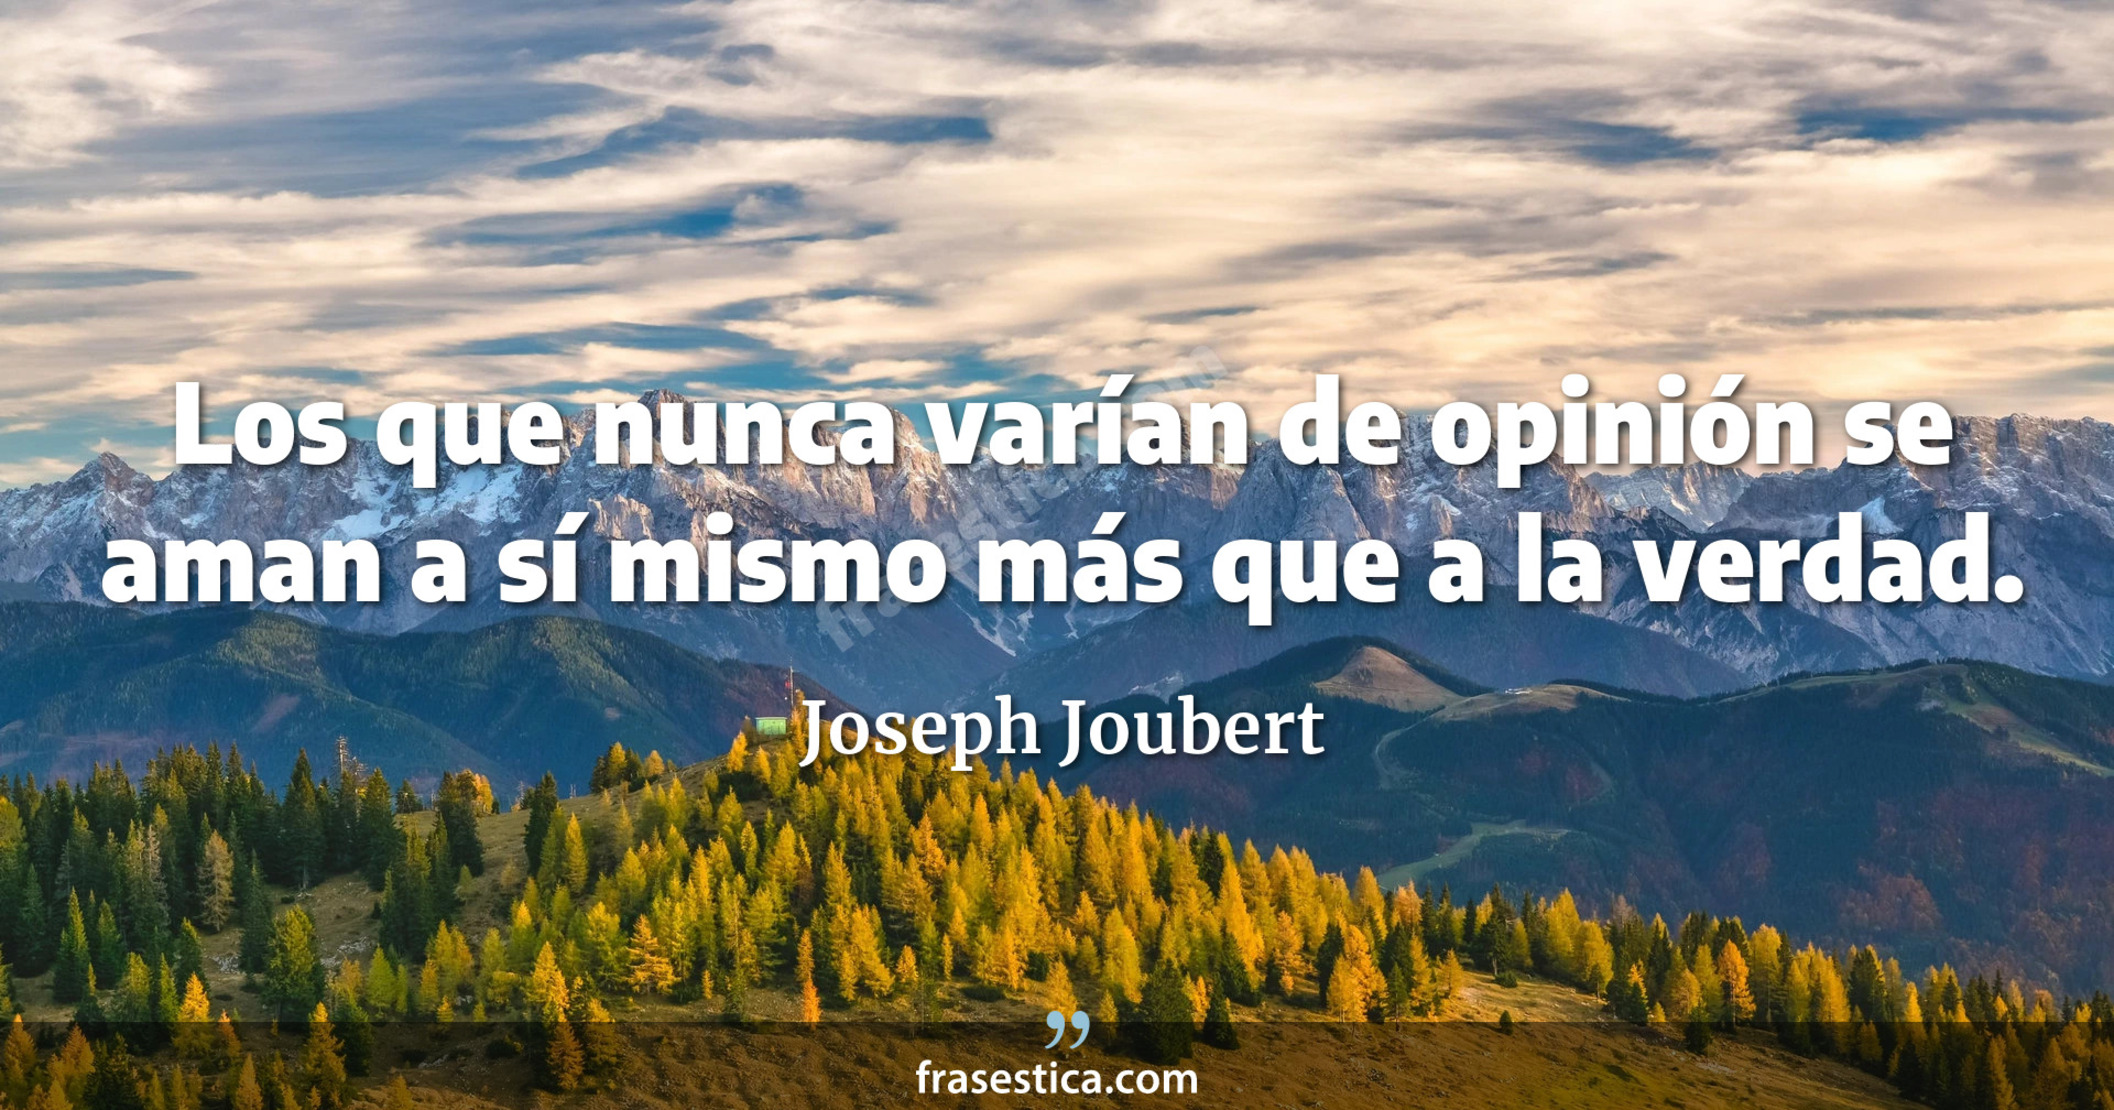 Los que nunca varían de opinión se aman a sí mismo más que a la verdad. - Joseph Joubert